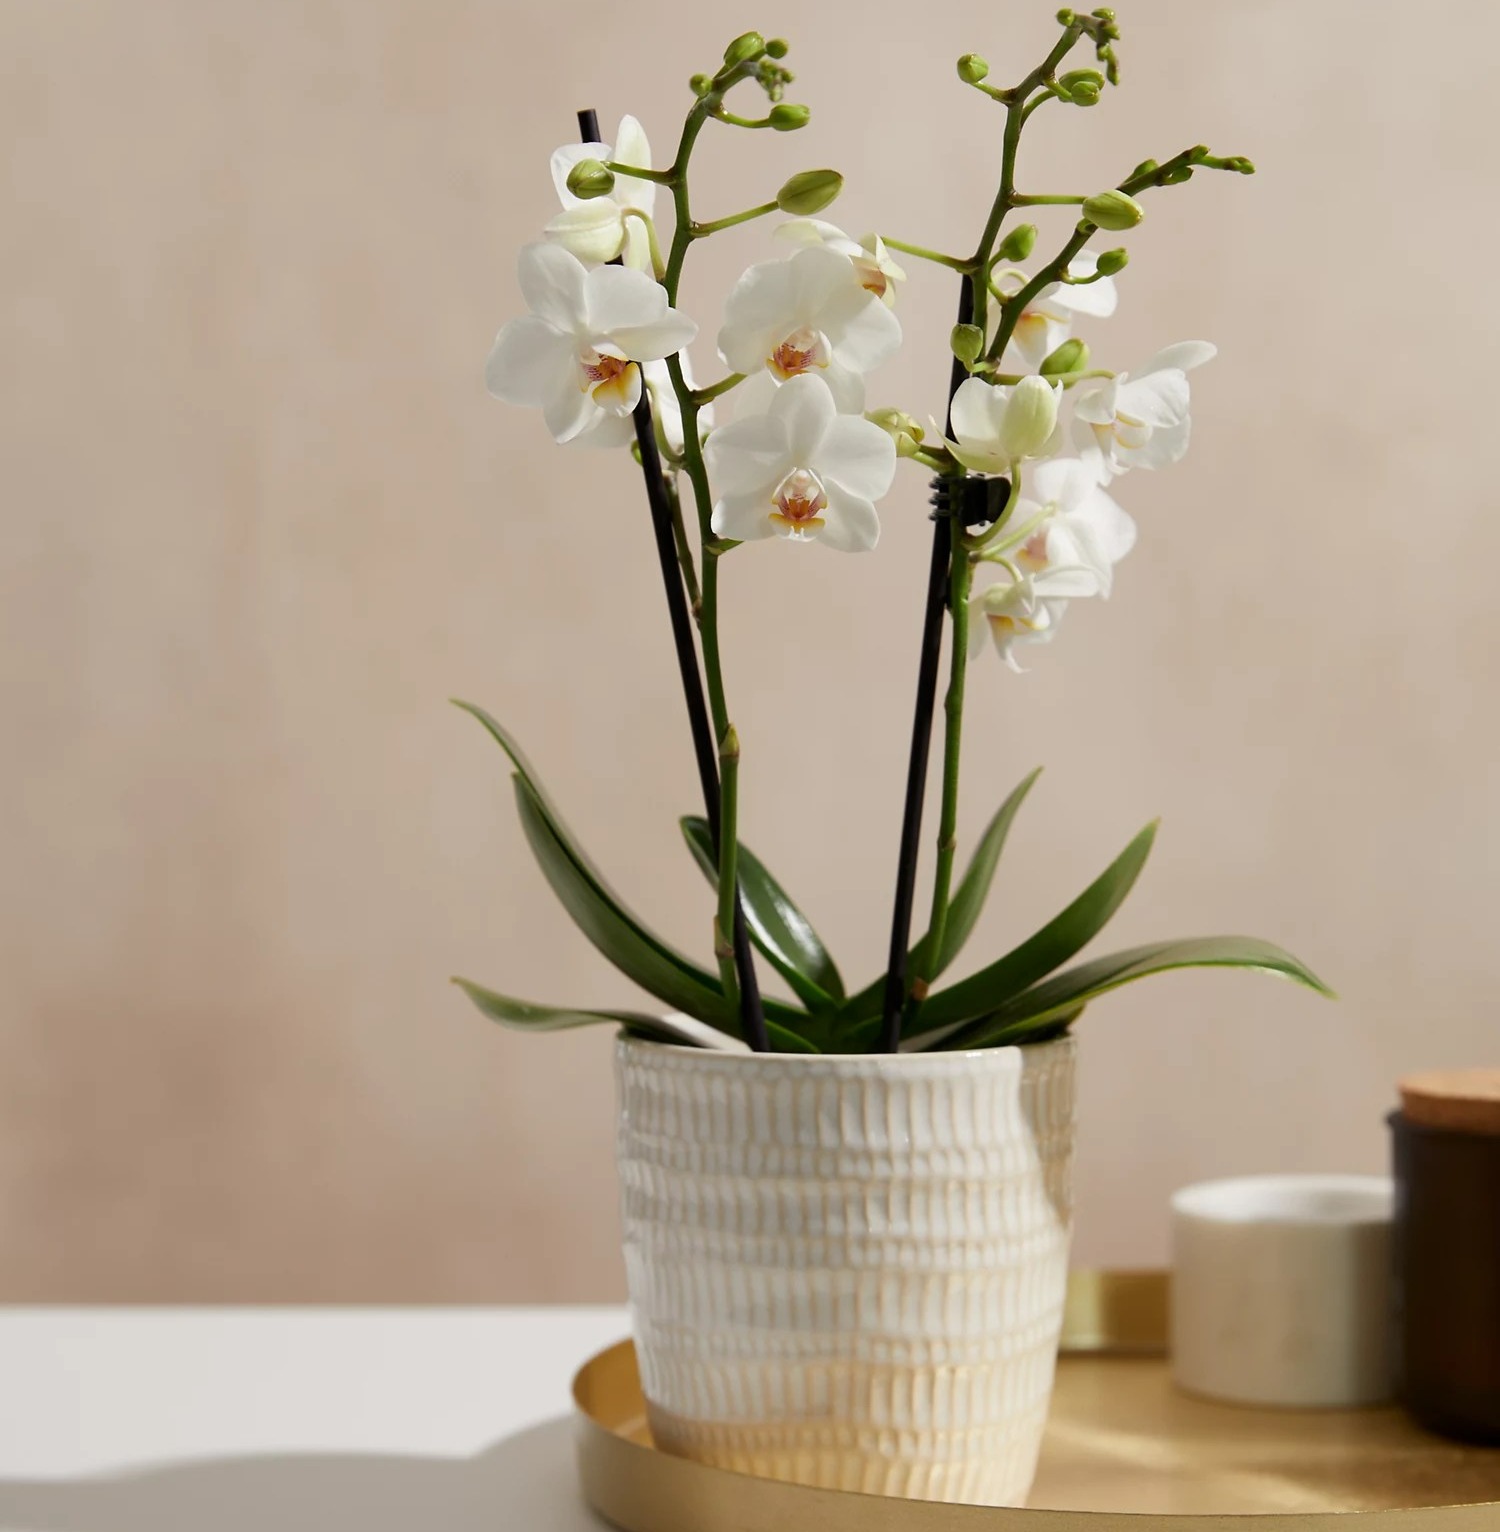 Orchideen sind eine dekorativere Wahl